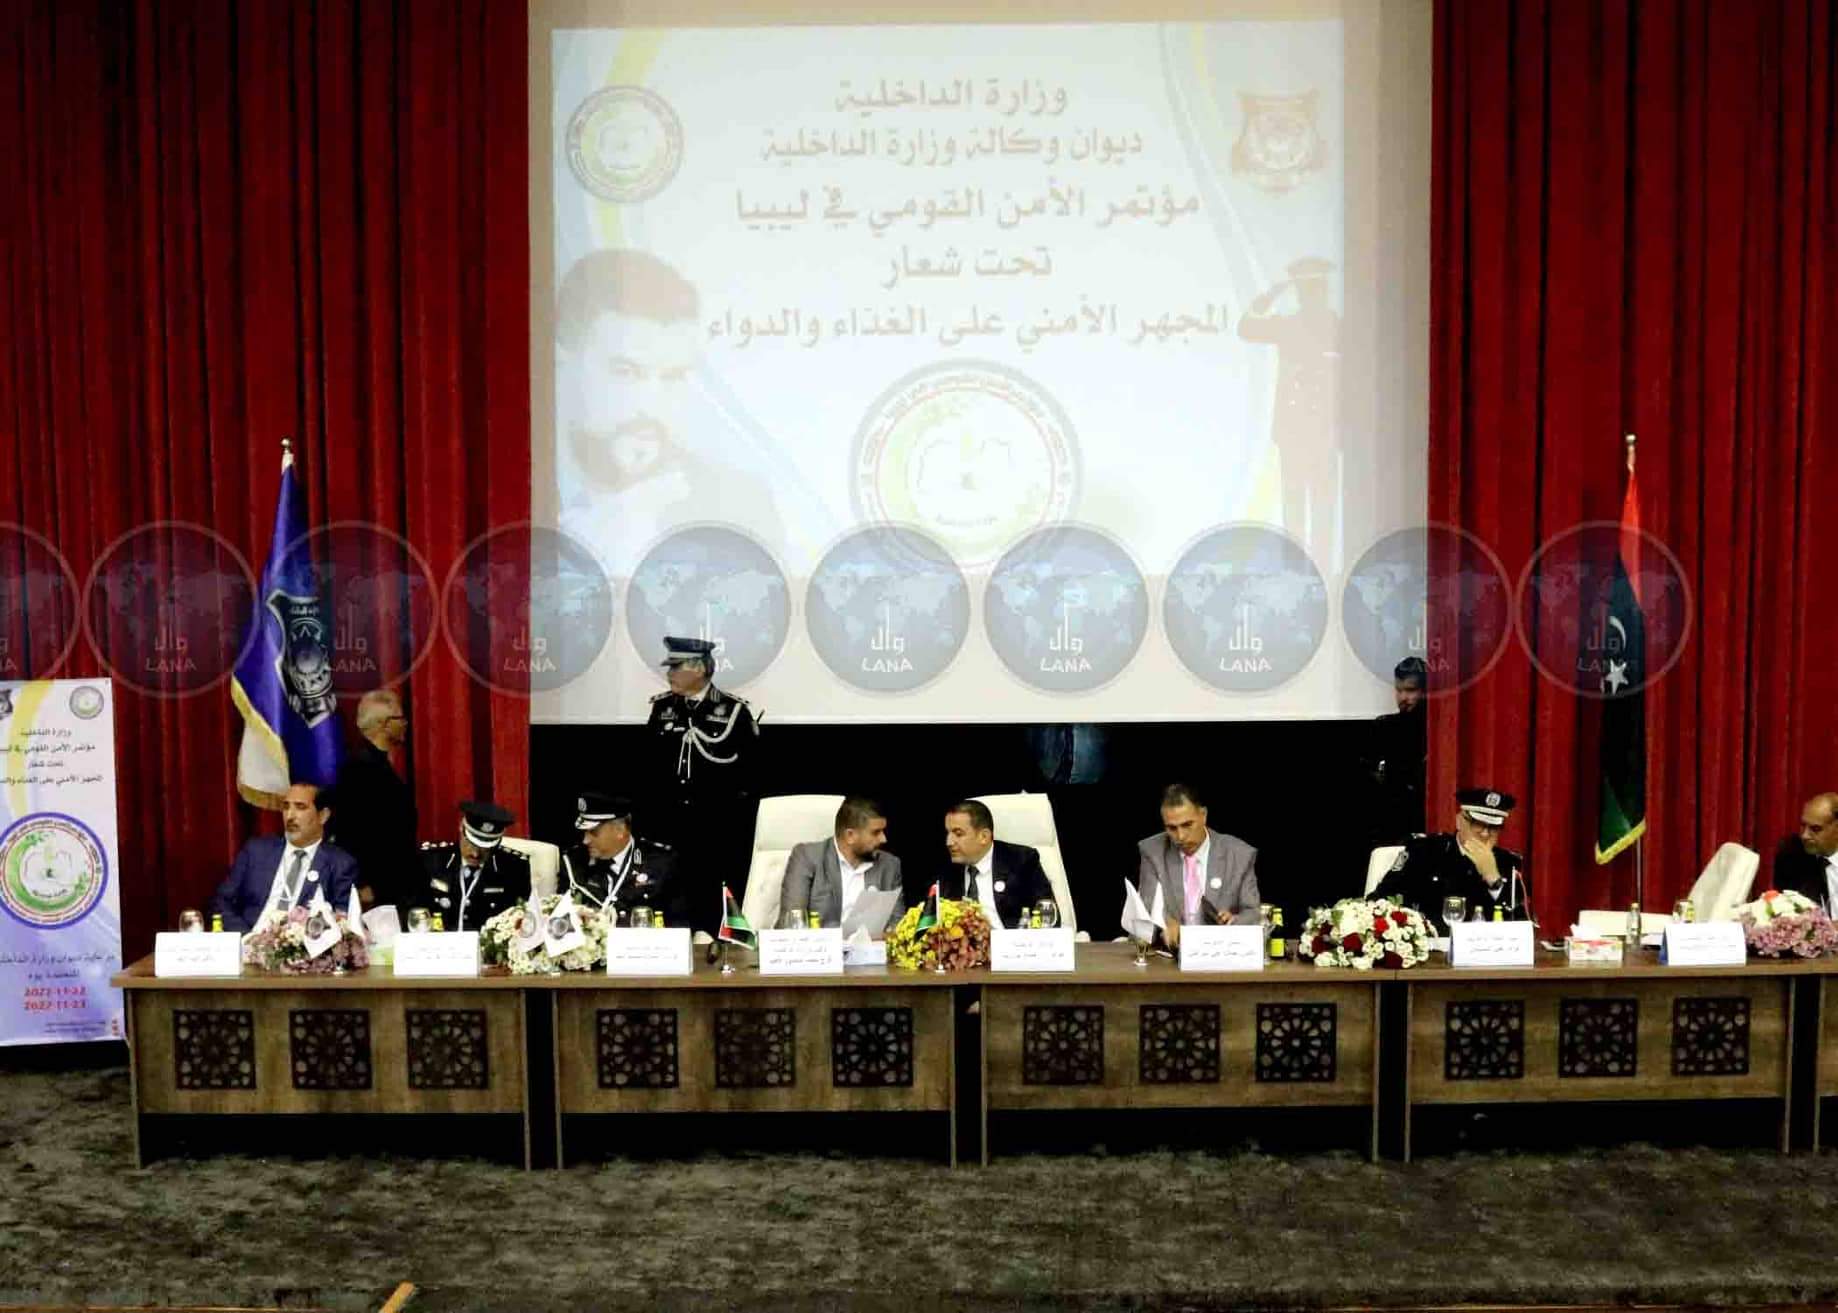 بنغازي| وزير الداخلية يفتتح فعاليات مؤتمر الأمن القومي في ليبيا